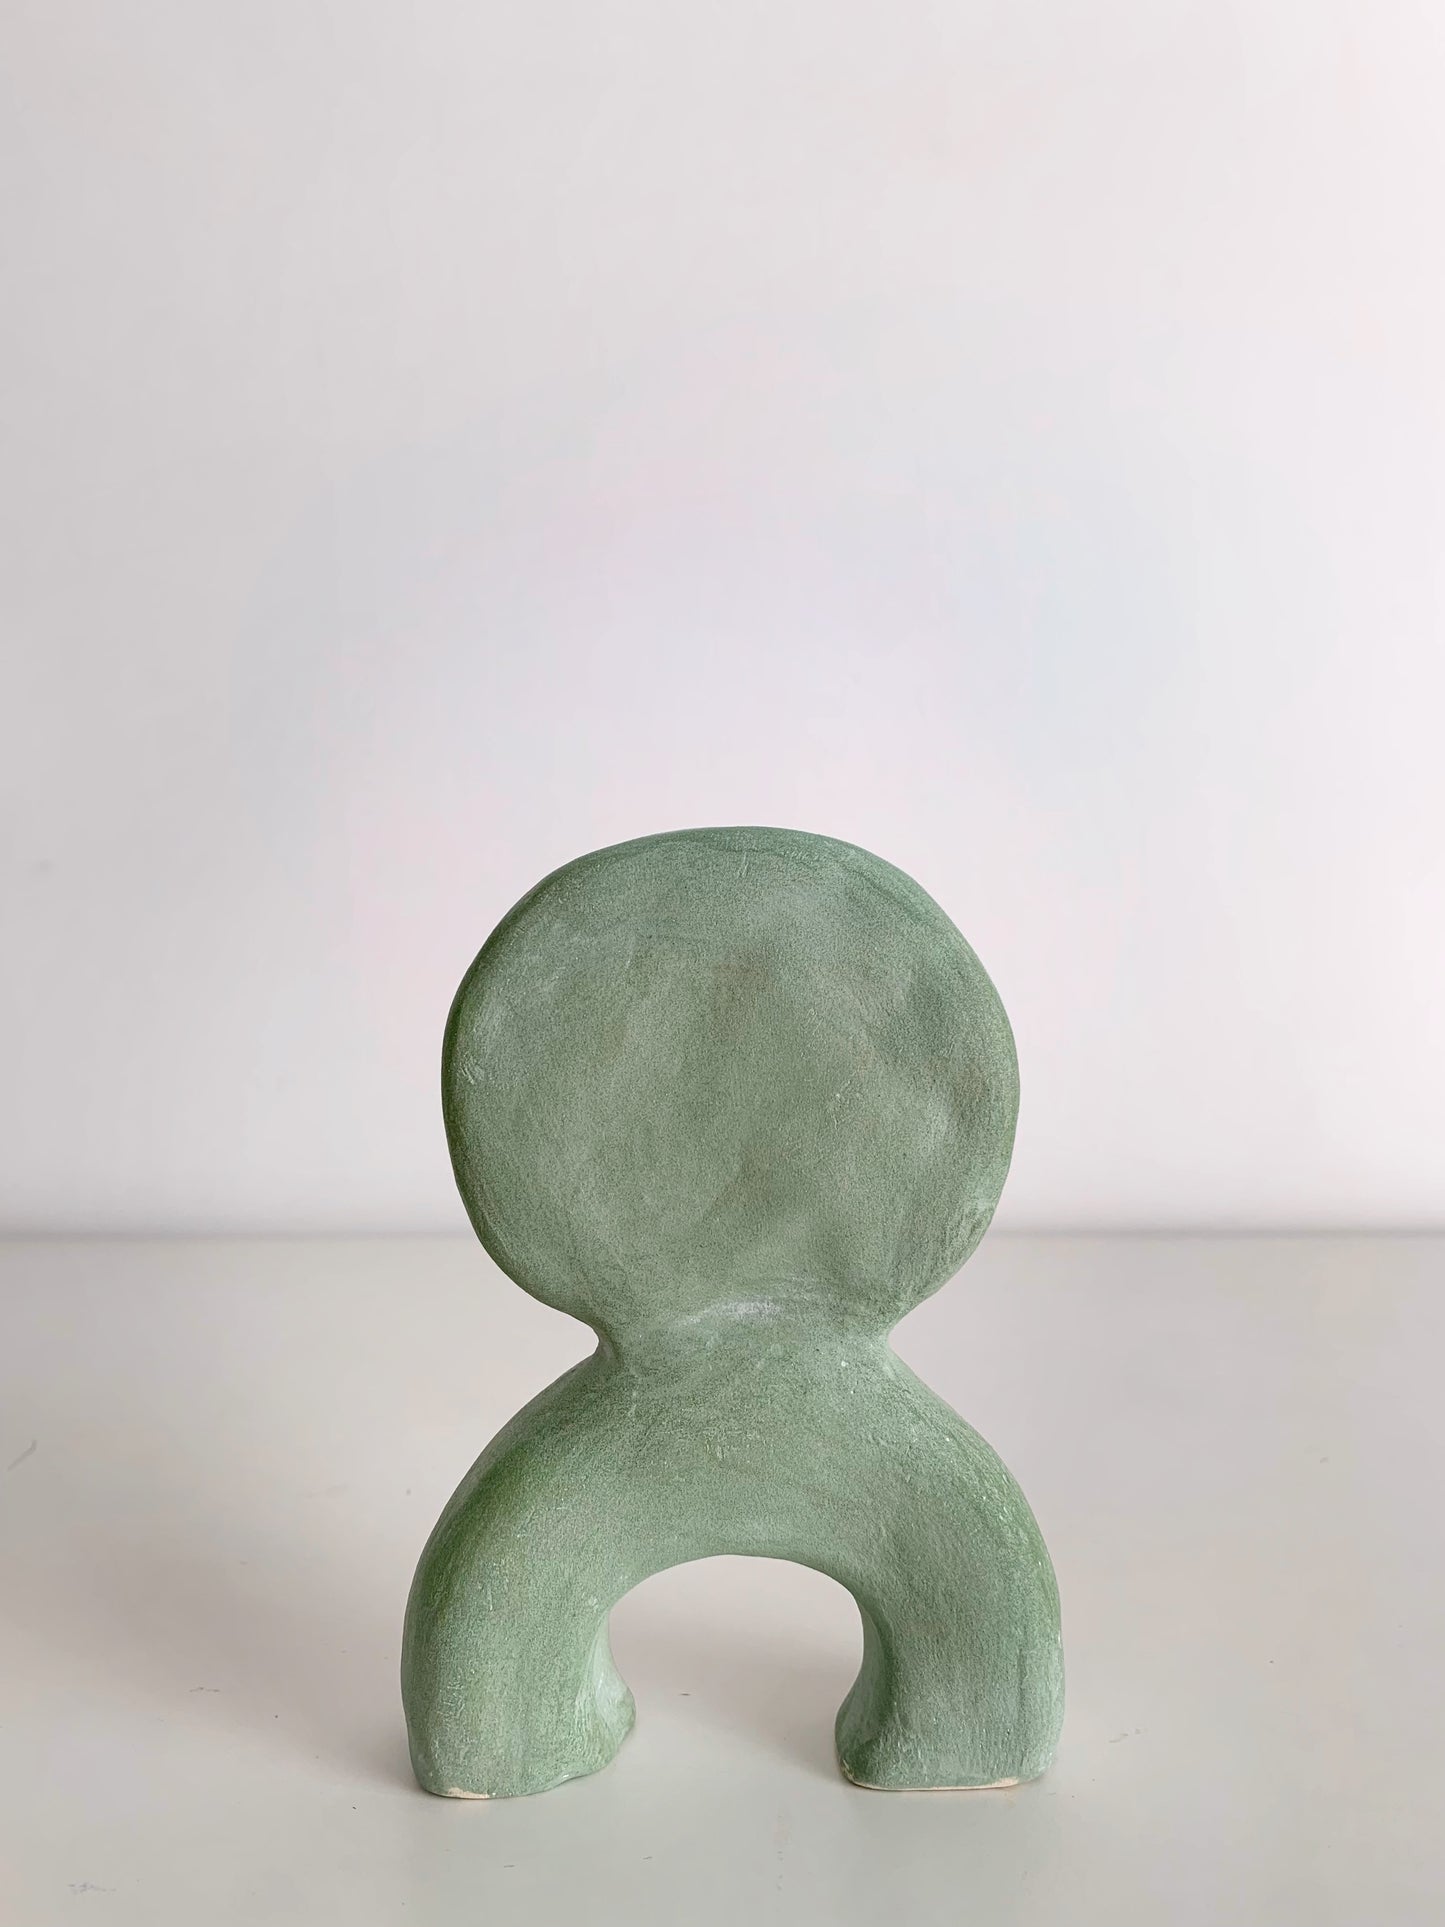 Mini ceramic sculpture